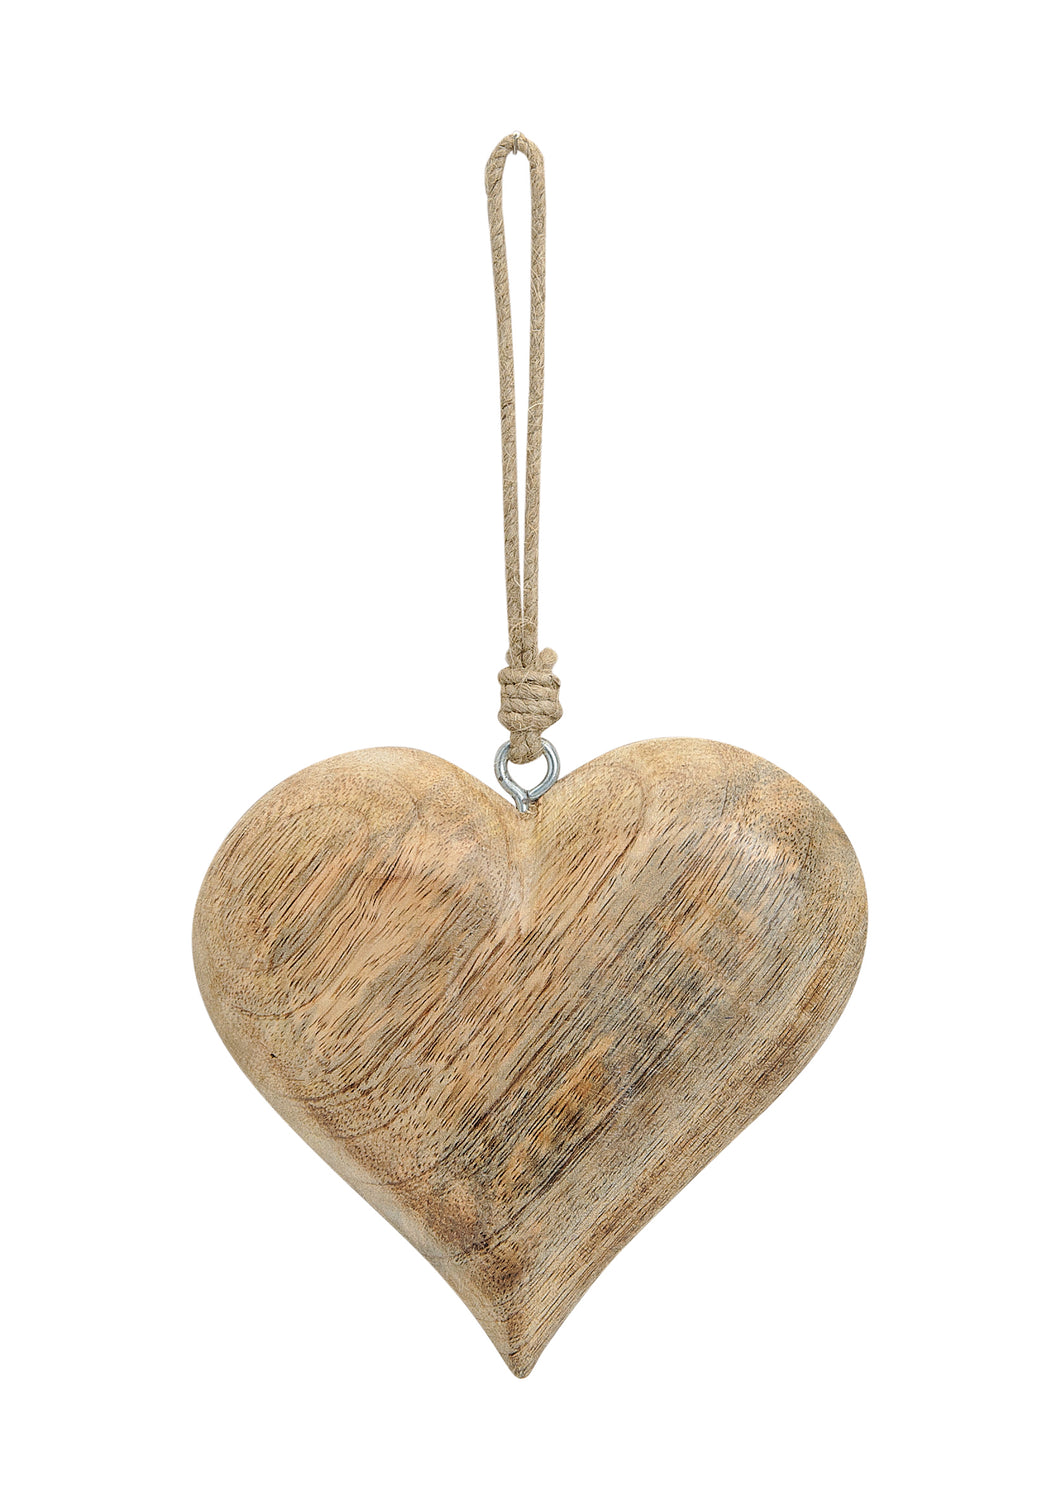 Hängendes Herz in braun aus Holz, 15 cm